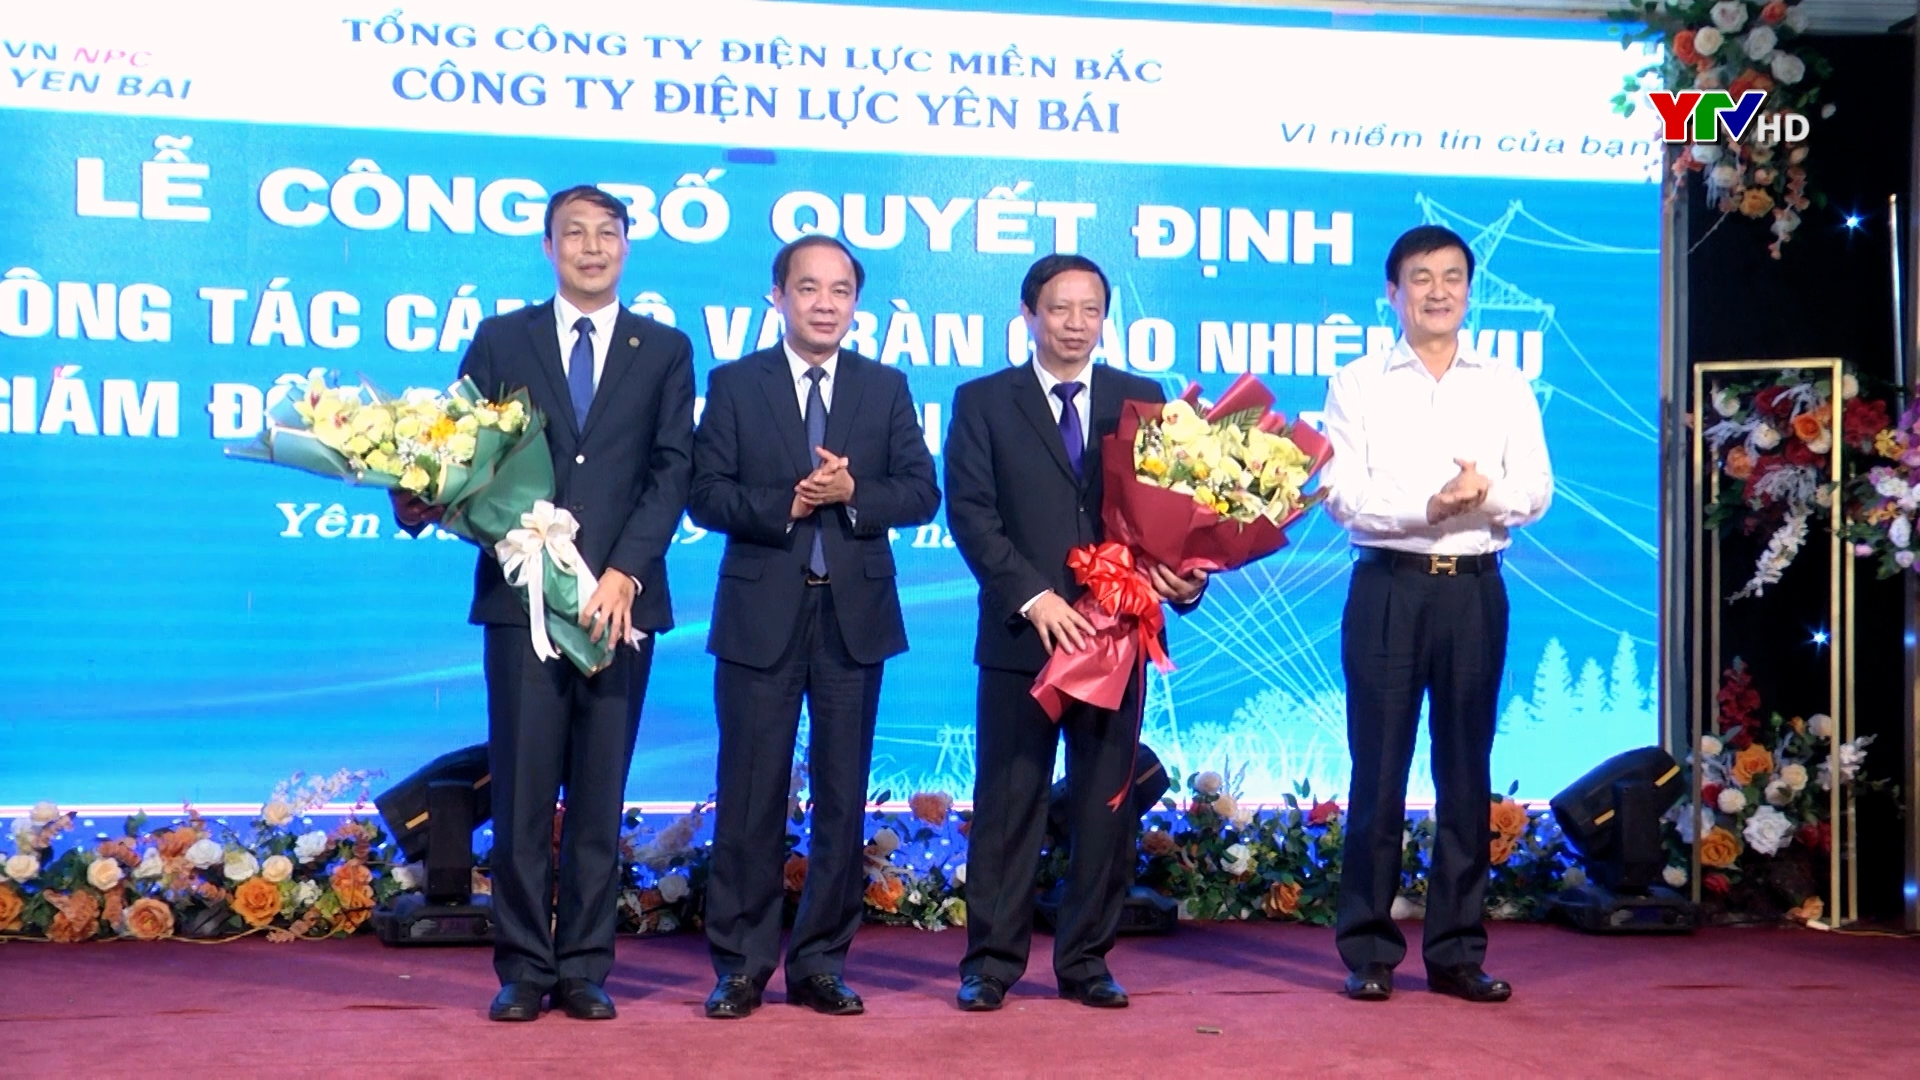 Ông Cao Bình Định giữ chức Giám đốc Công ty Điện lực Yên Bái